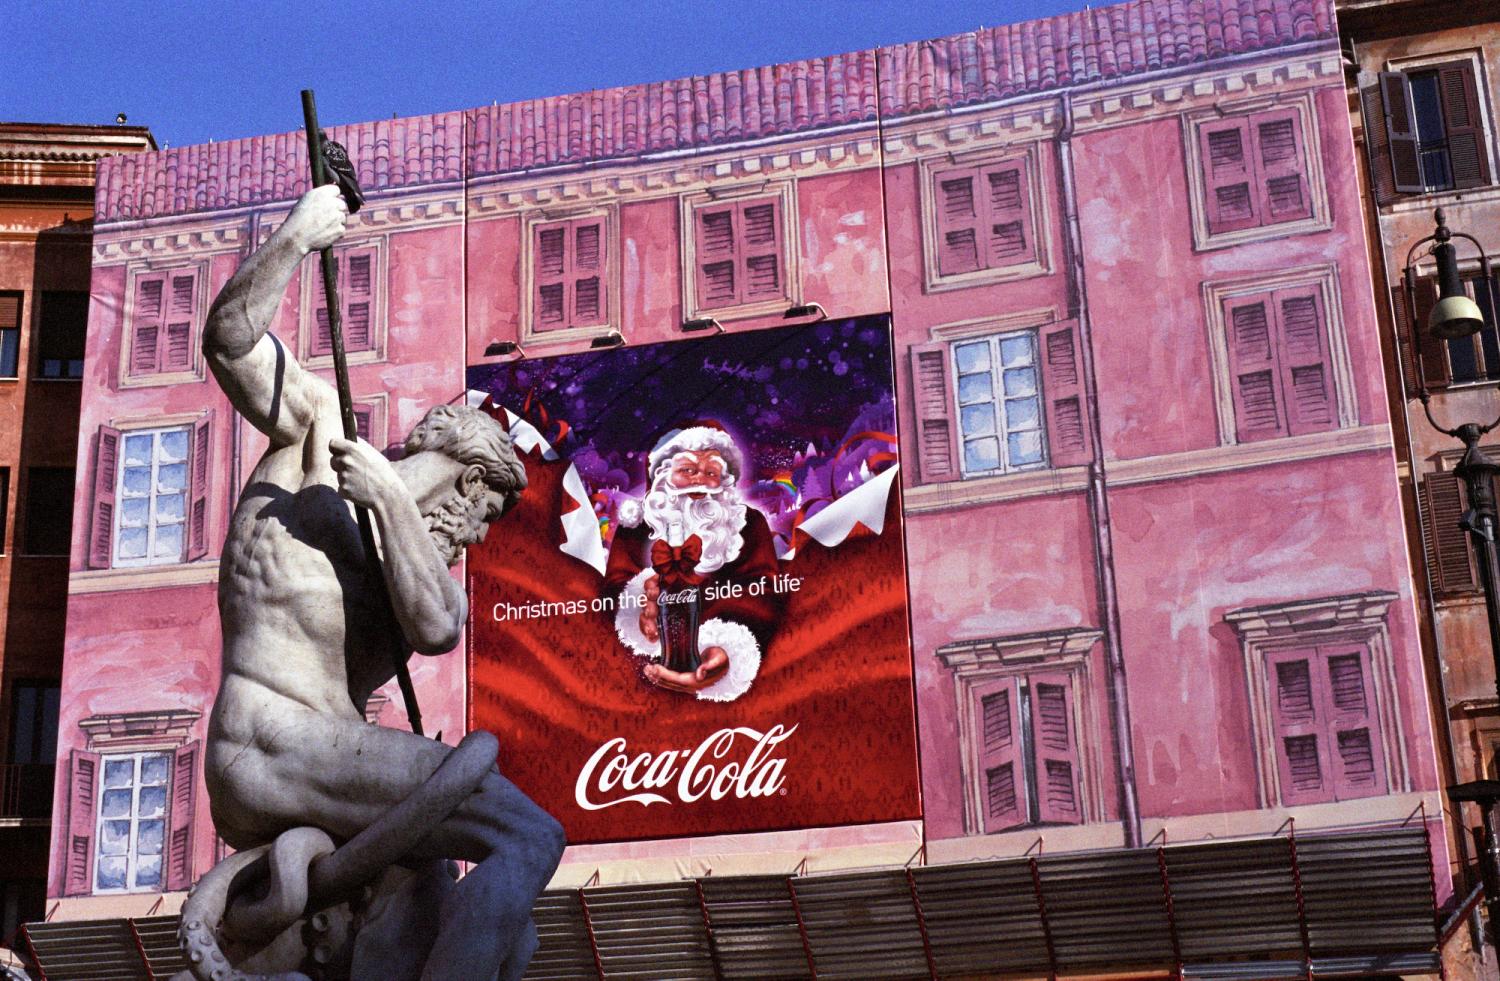 Piazza Navona, étalé sur la bâche en trompe-l'œil rose d'un échafaudage, le père Noël de Coca-Cola semble défier Neptune dans sa fontaine. Rome, décembre 2007.